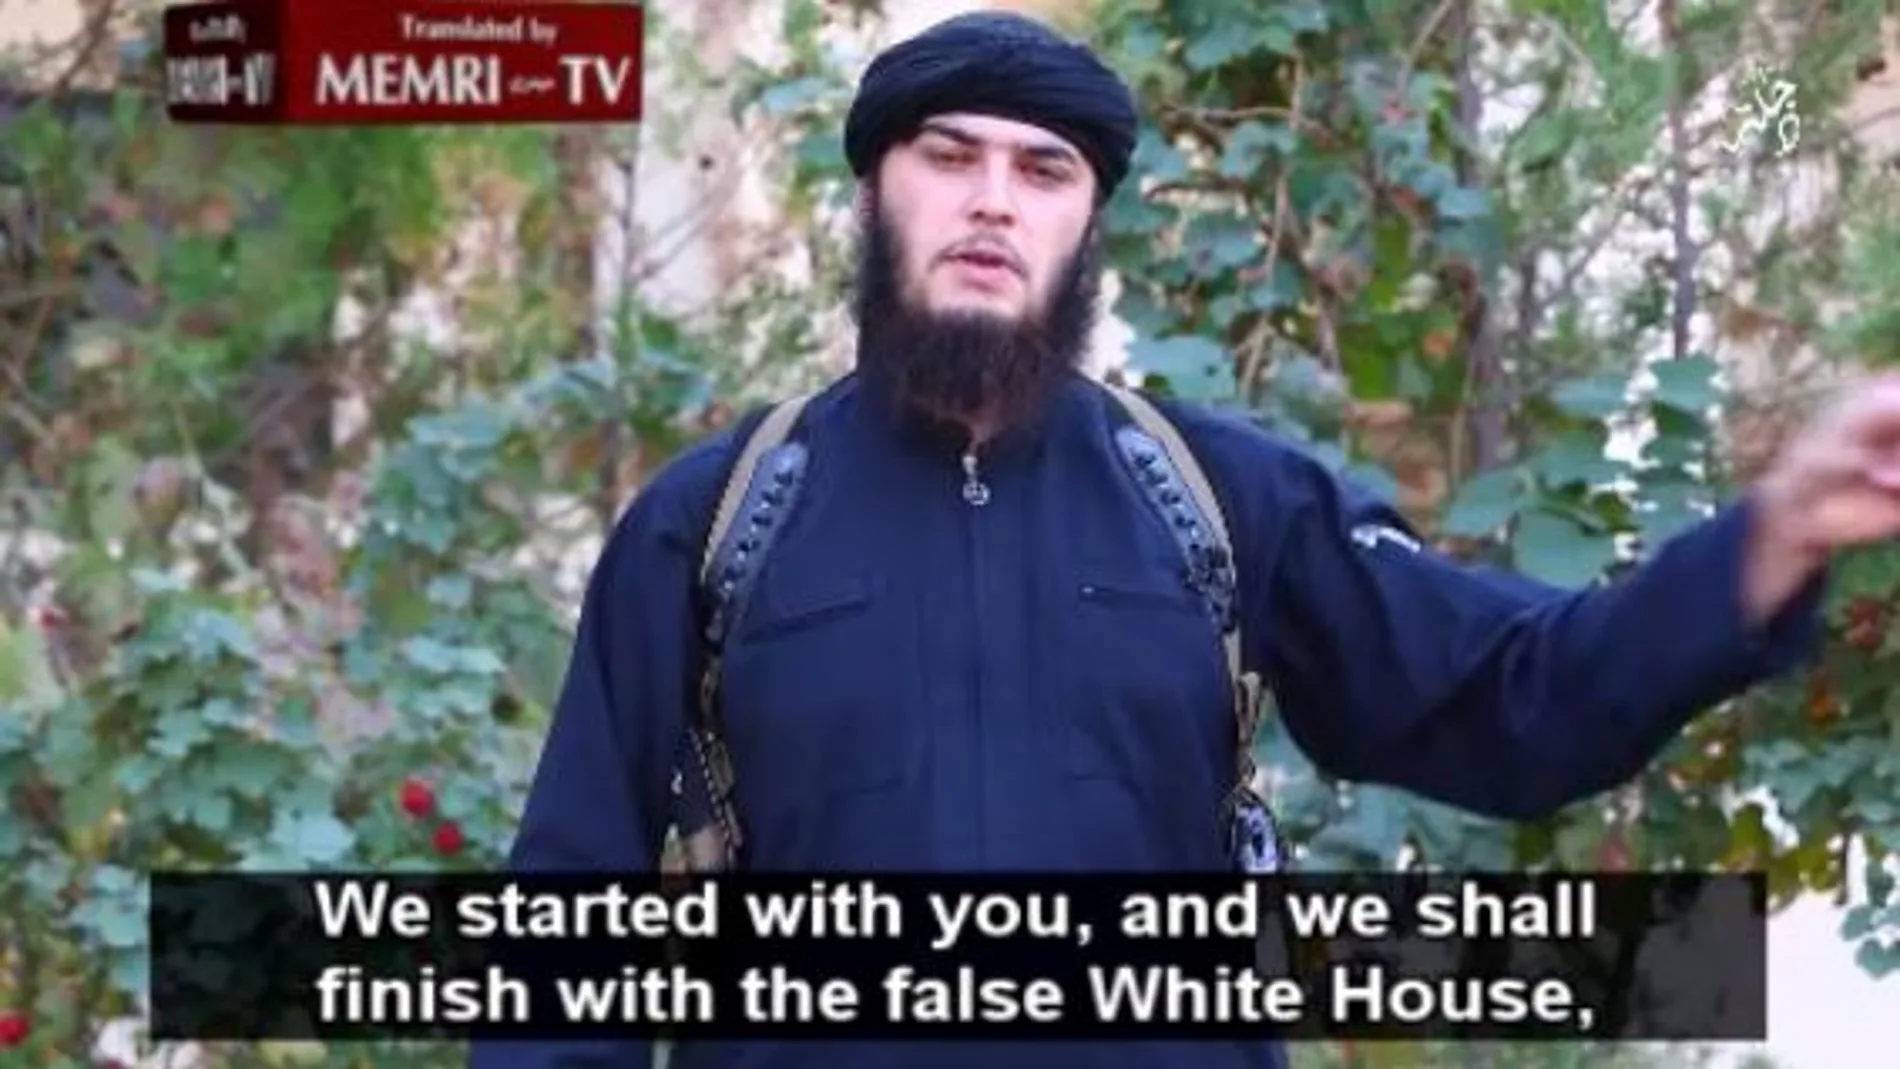 Fotograma del vídeo del Estado Islámico en el que amenaza a la Casa Blanca